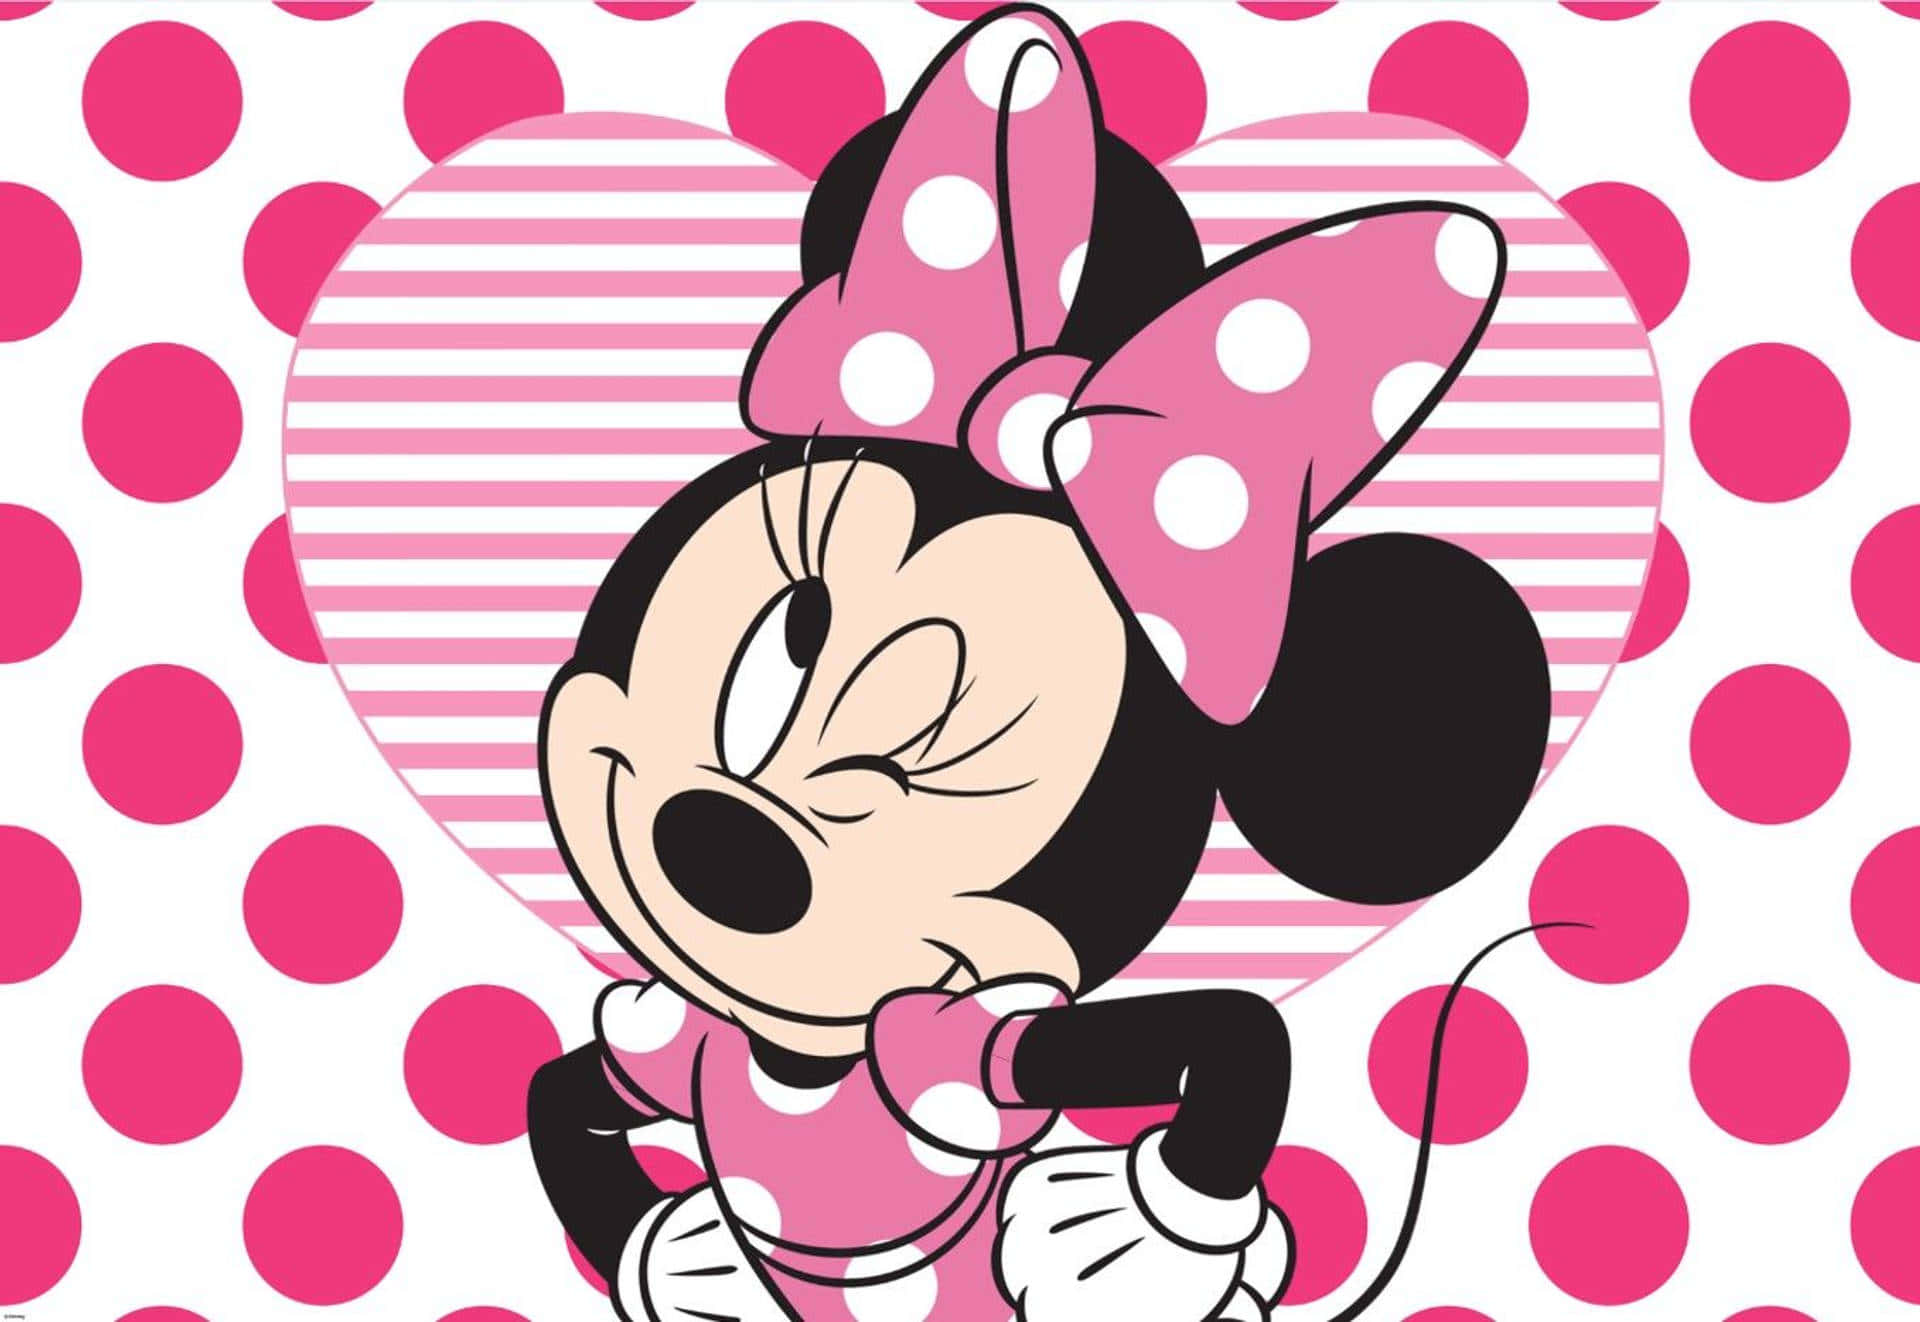  Minnie Mouse Hintergrundbild 1920x1322. Free Minnie Mouse Pink Wallpaper Downloads, Minnie Mouse Pink Wallpaper for FREE